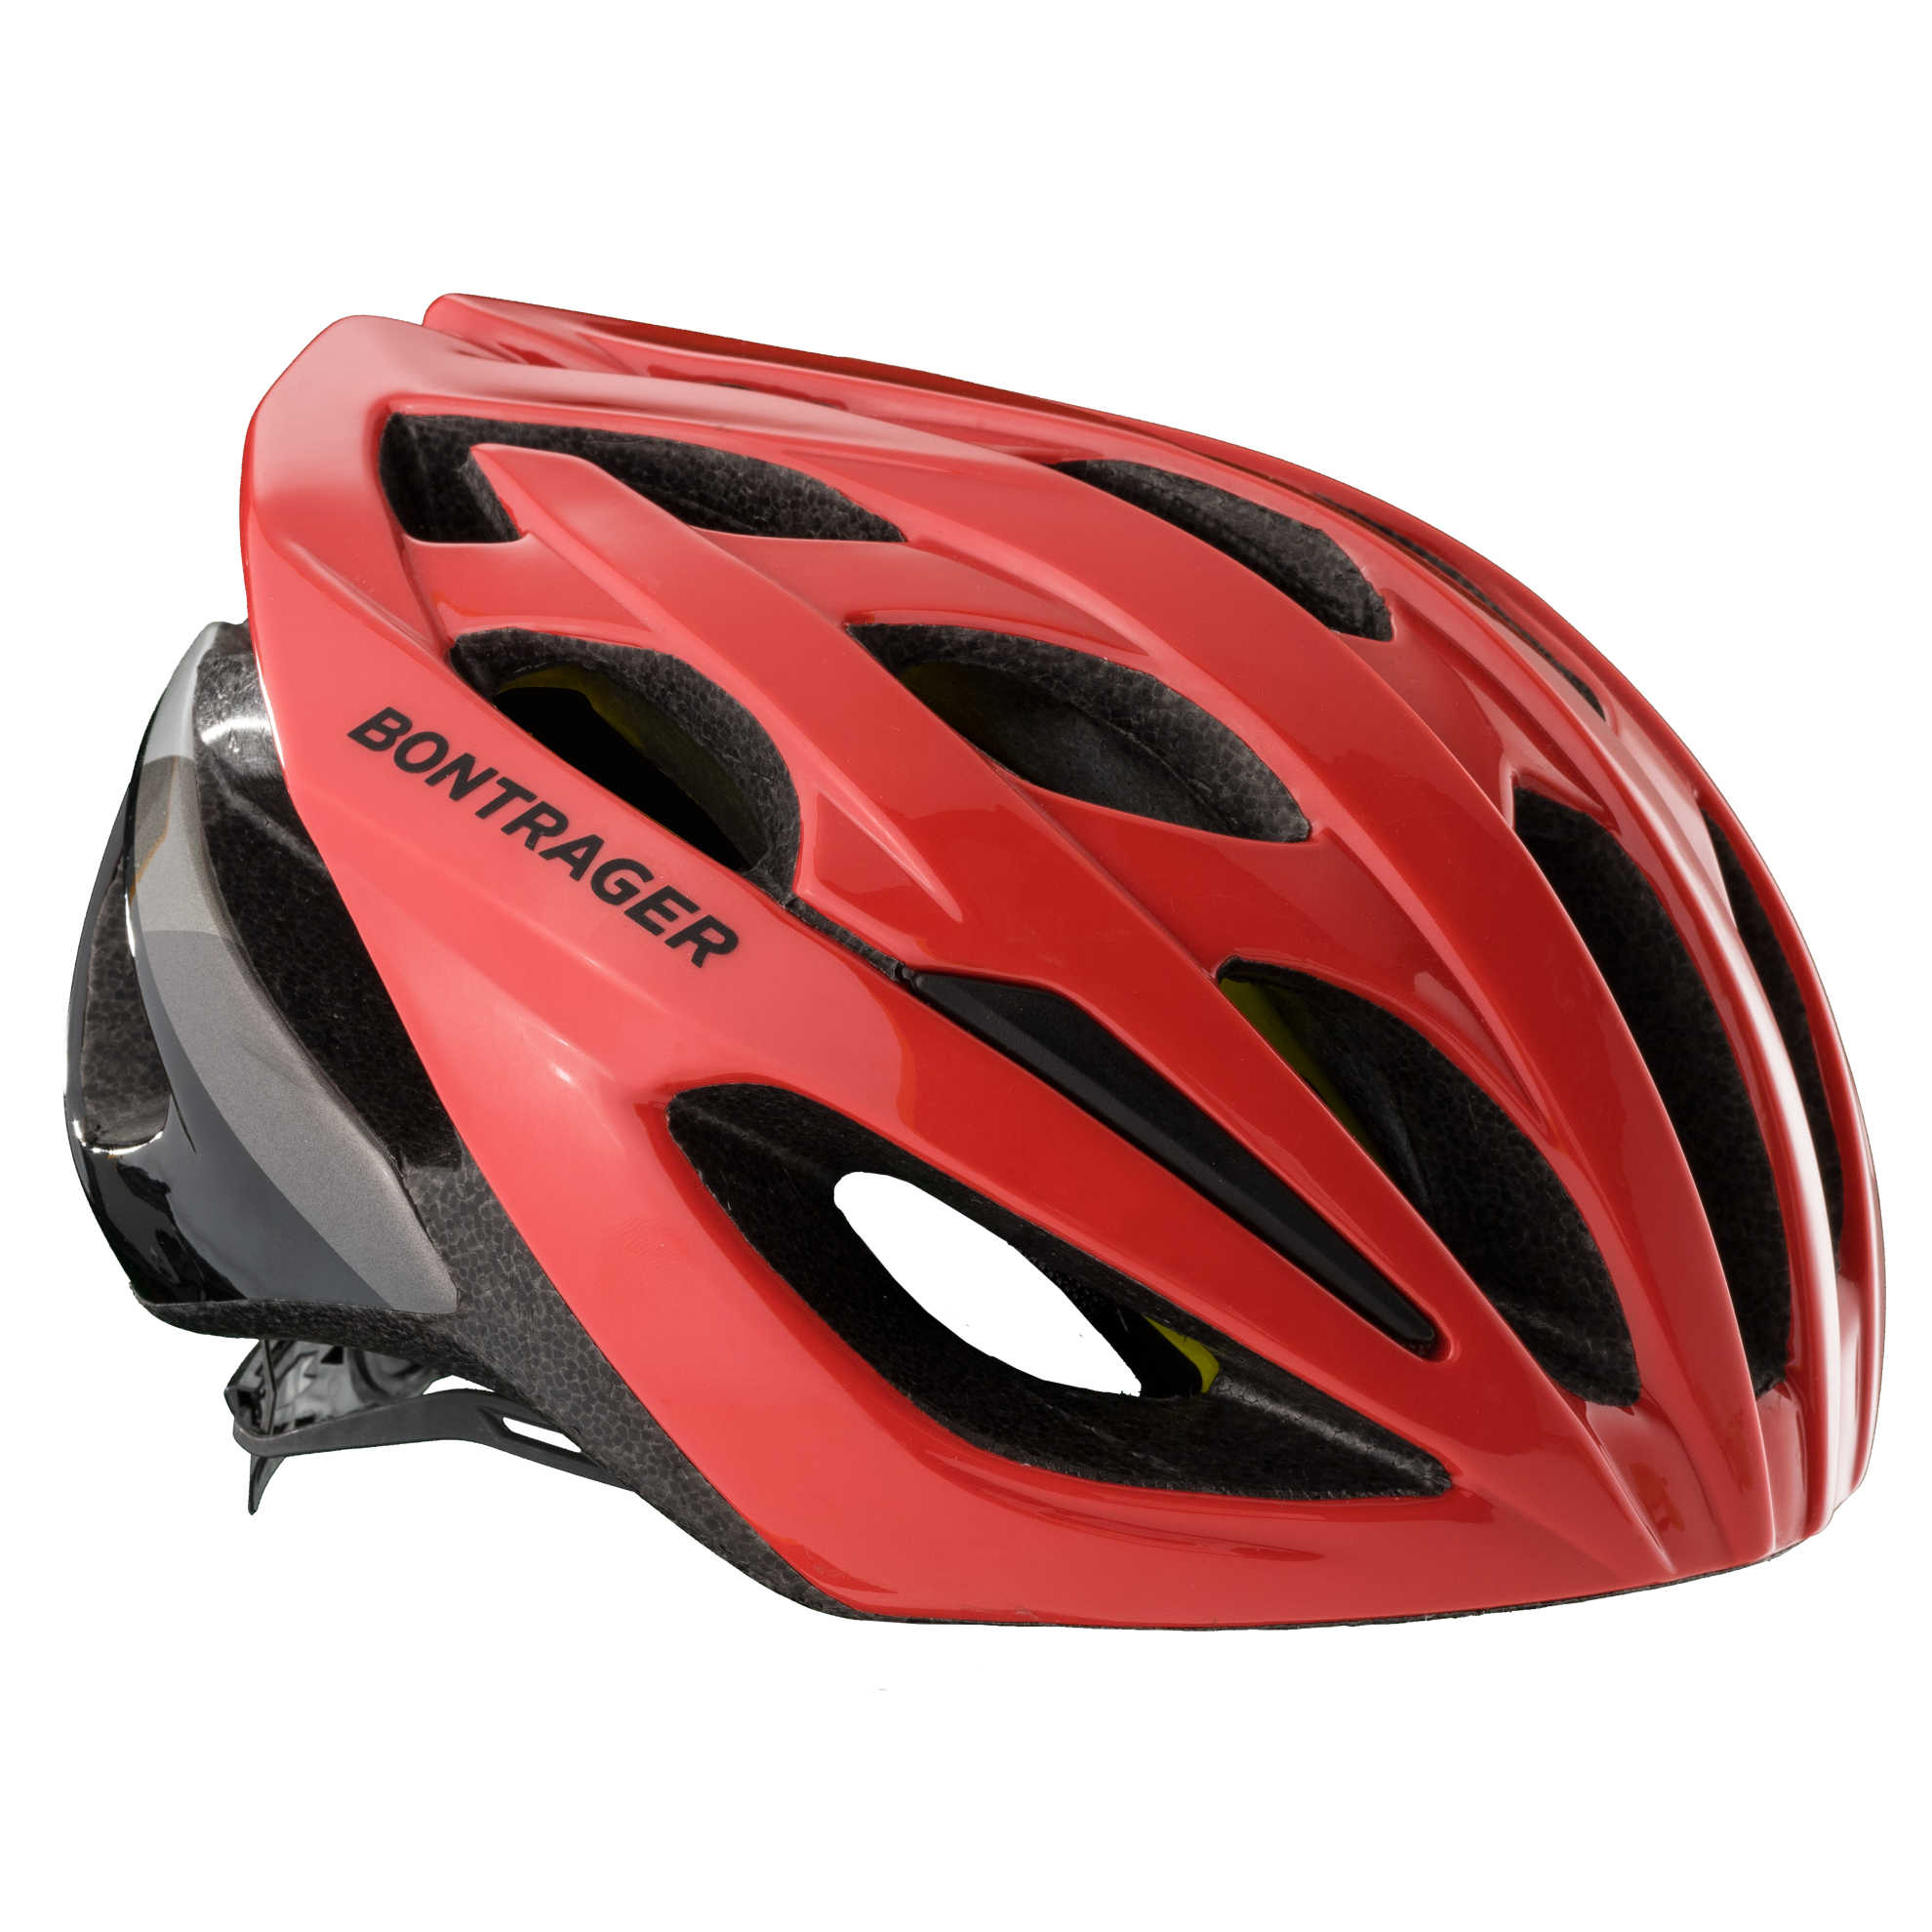 starvos mips road bike helmet